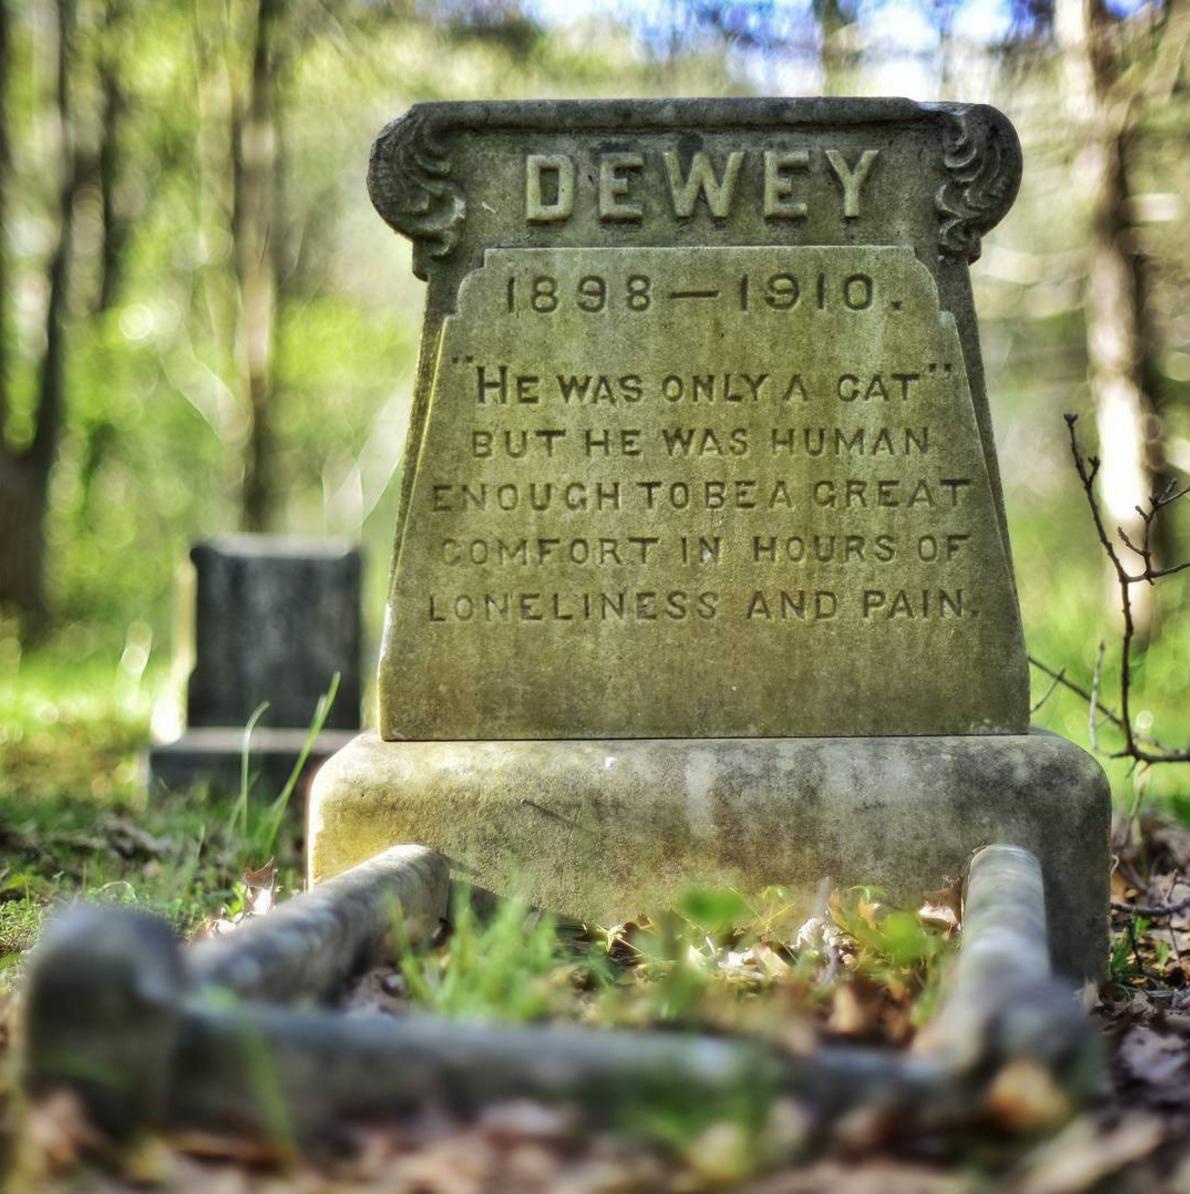 RIP in Peace, Dewey the gato. 